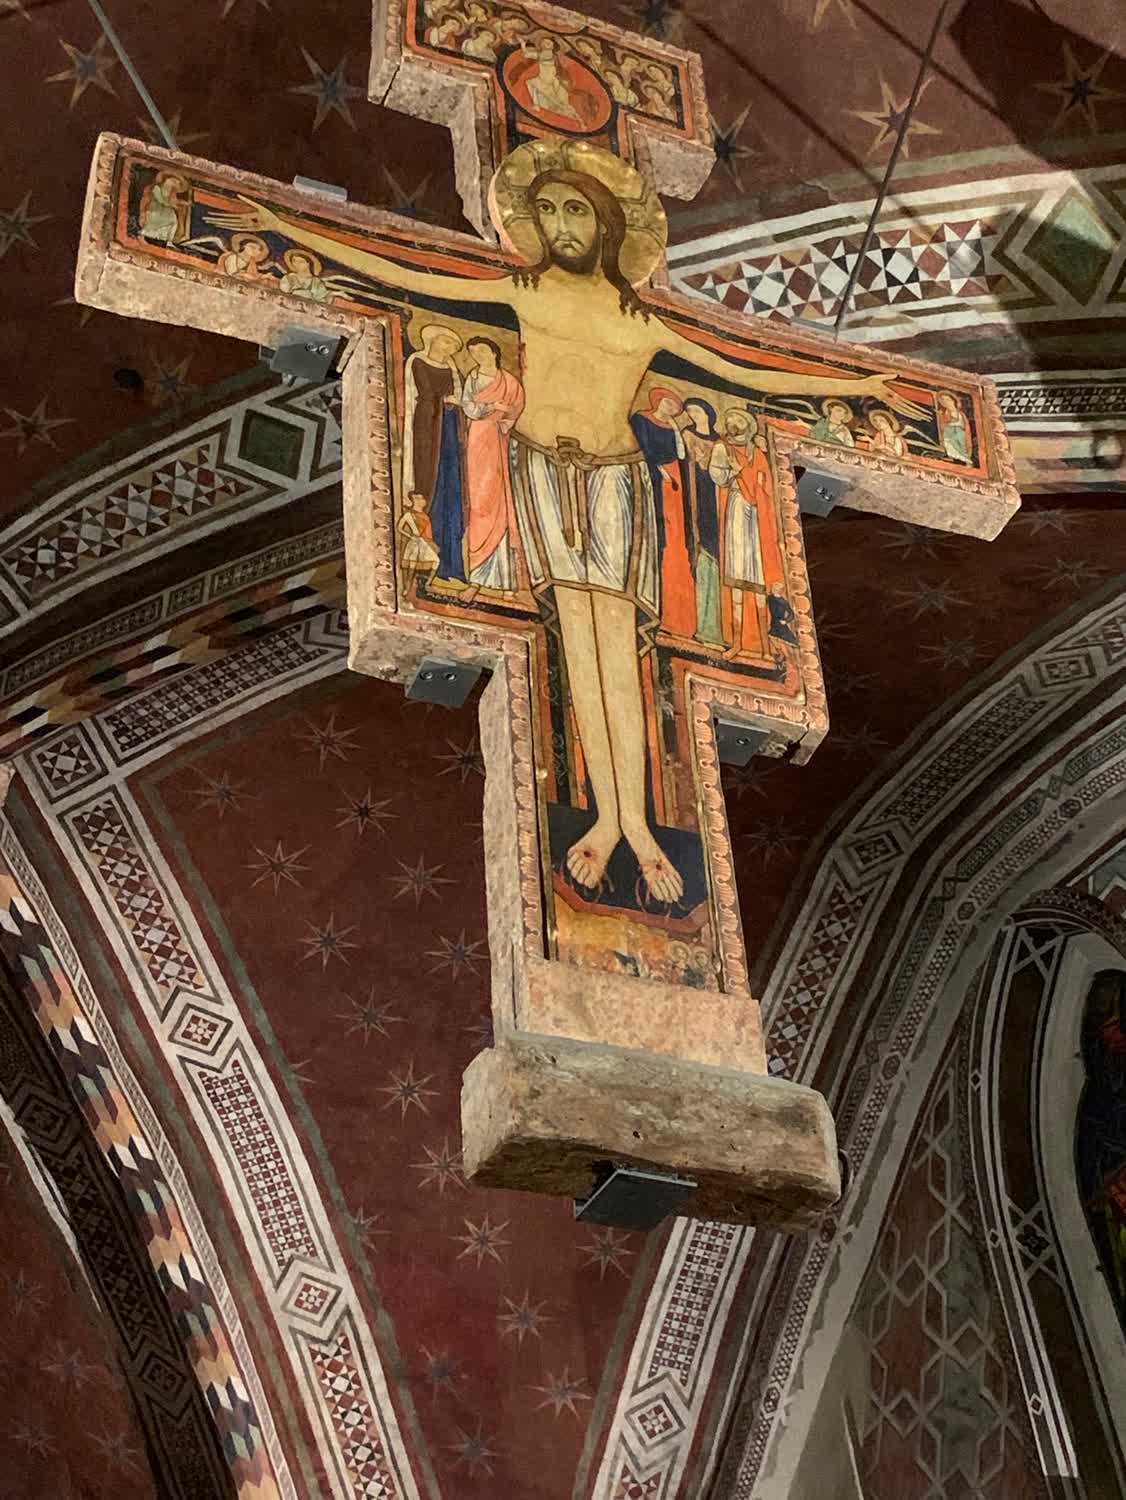 The original San Damiano cross